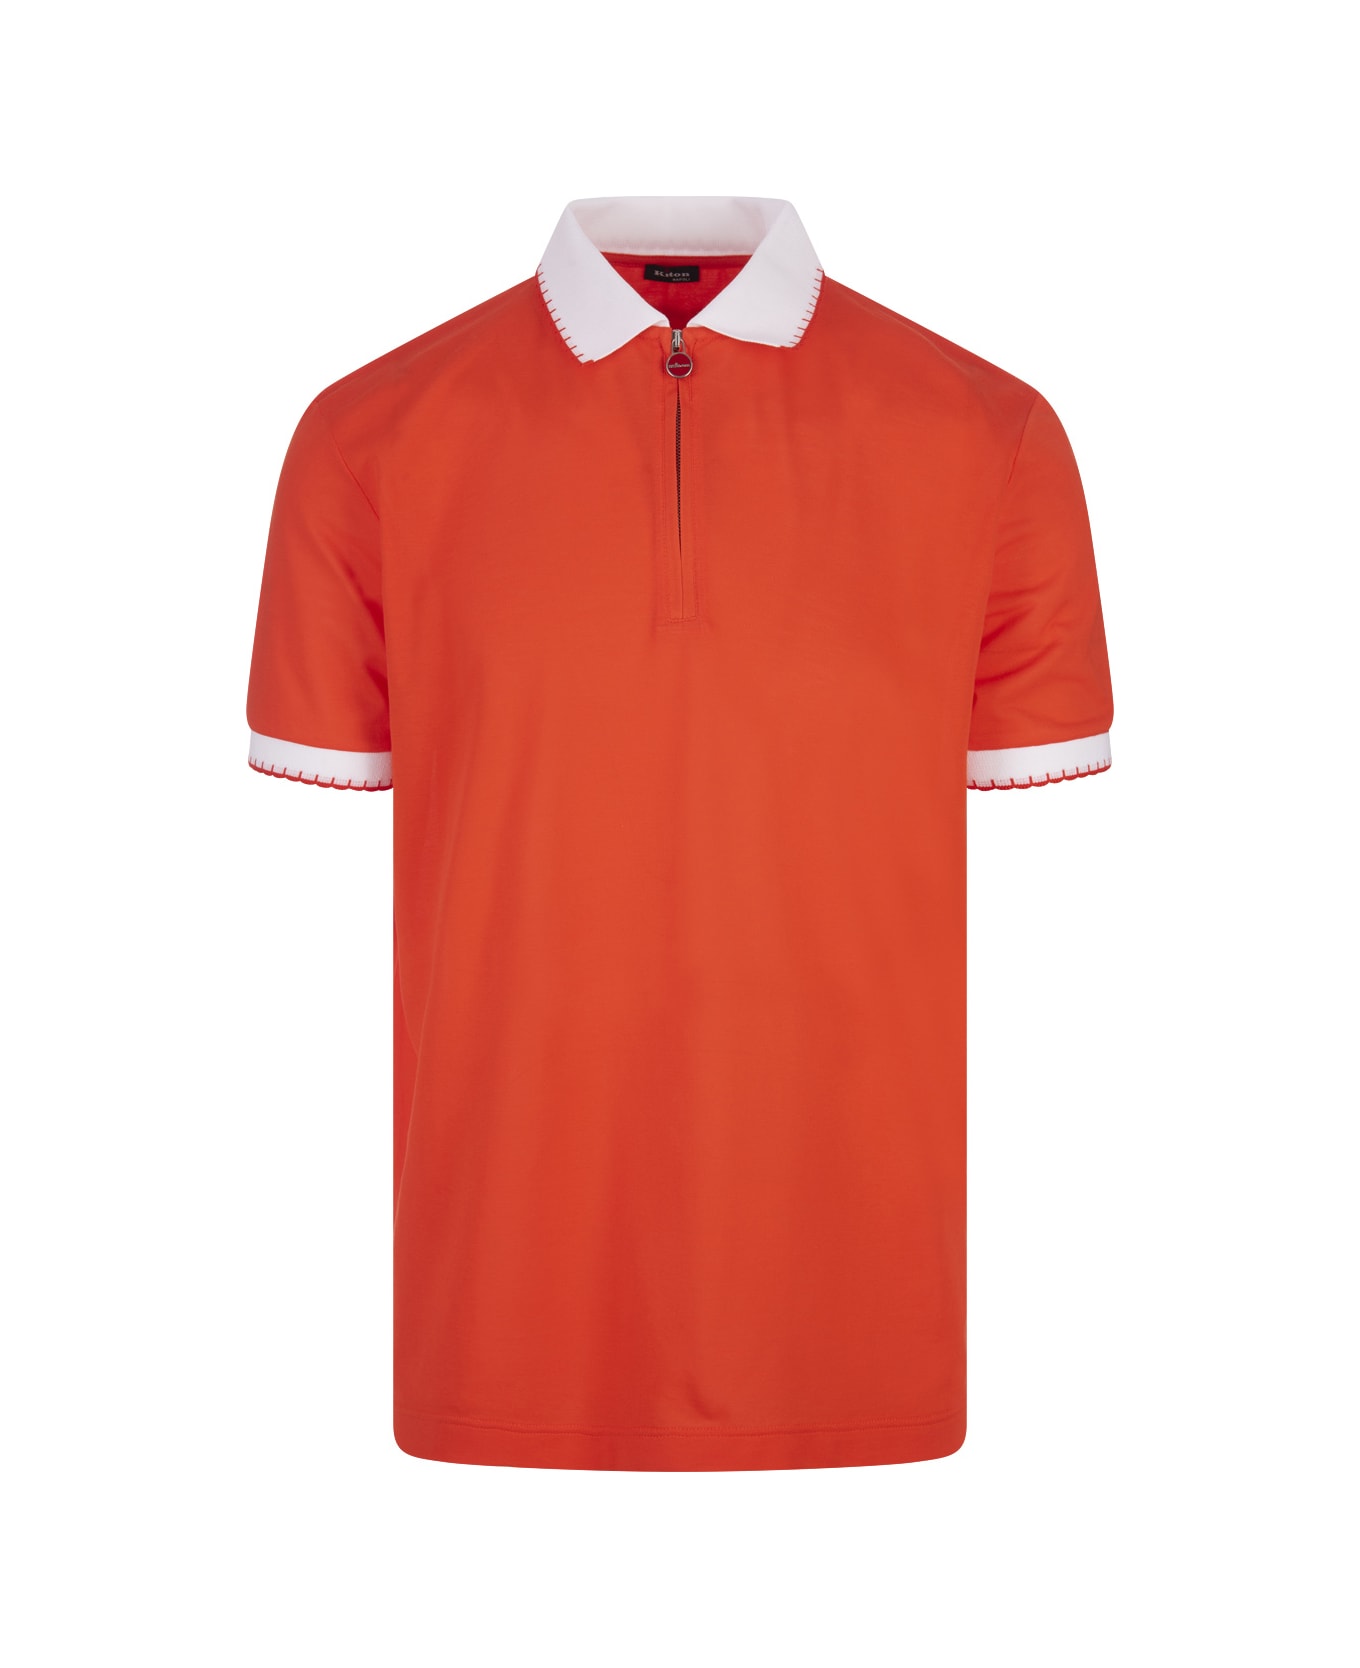 Kiton Orange Piqué Polo Shirt With Zip - Orange